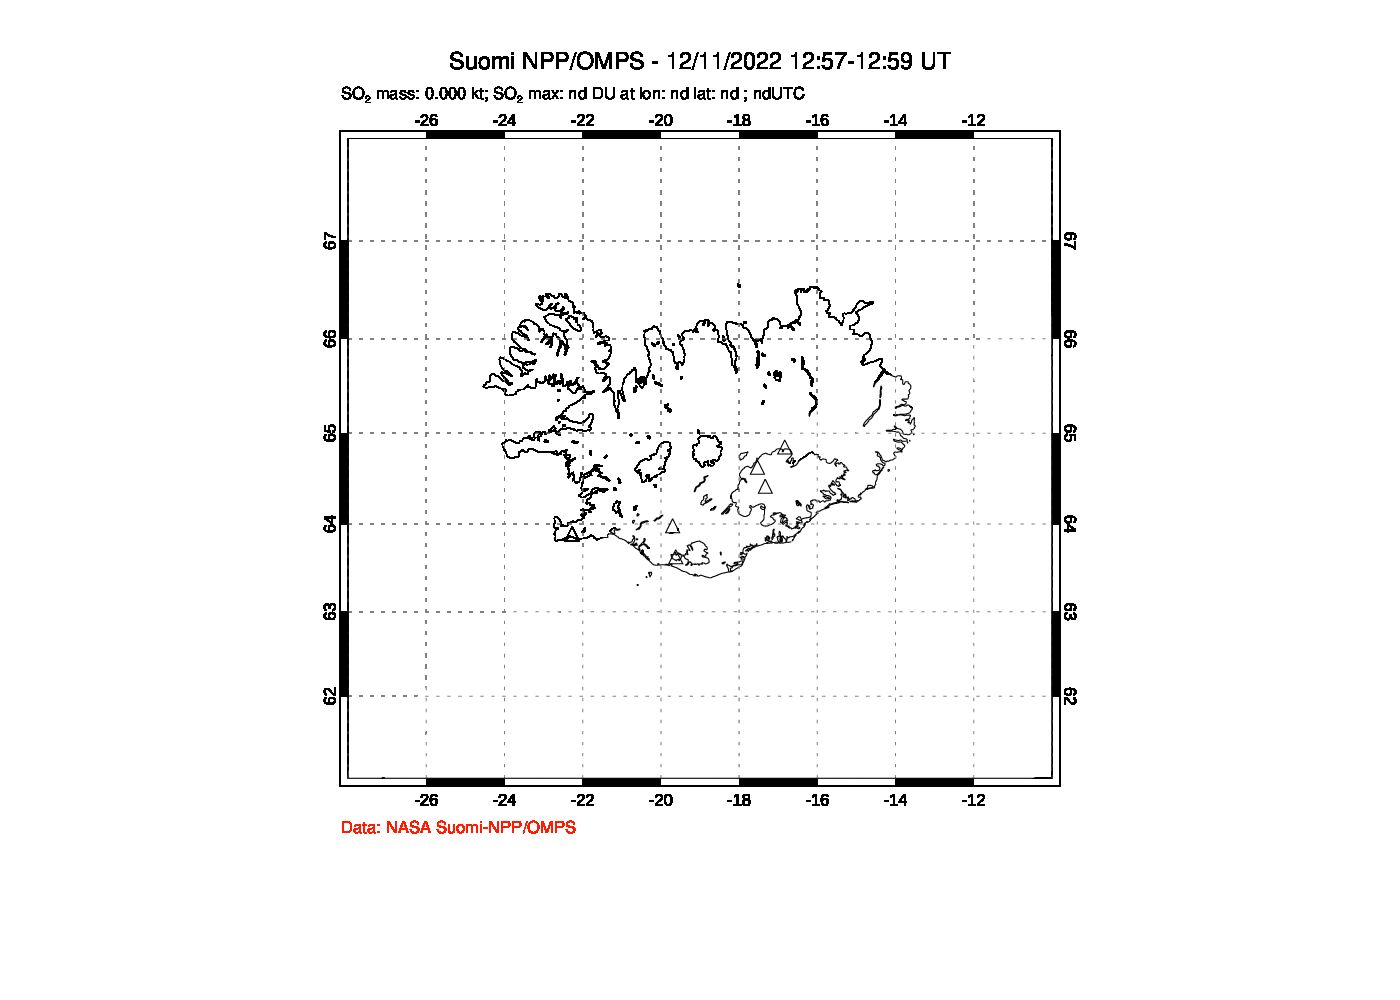 A sulfur dioxide image over Iceland on Dec 11, 2022.